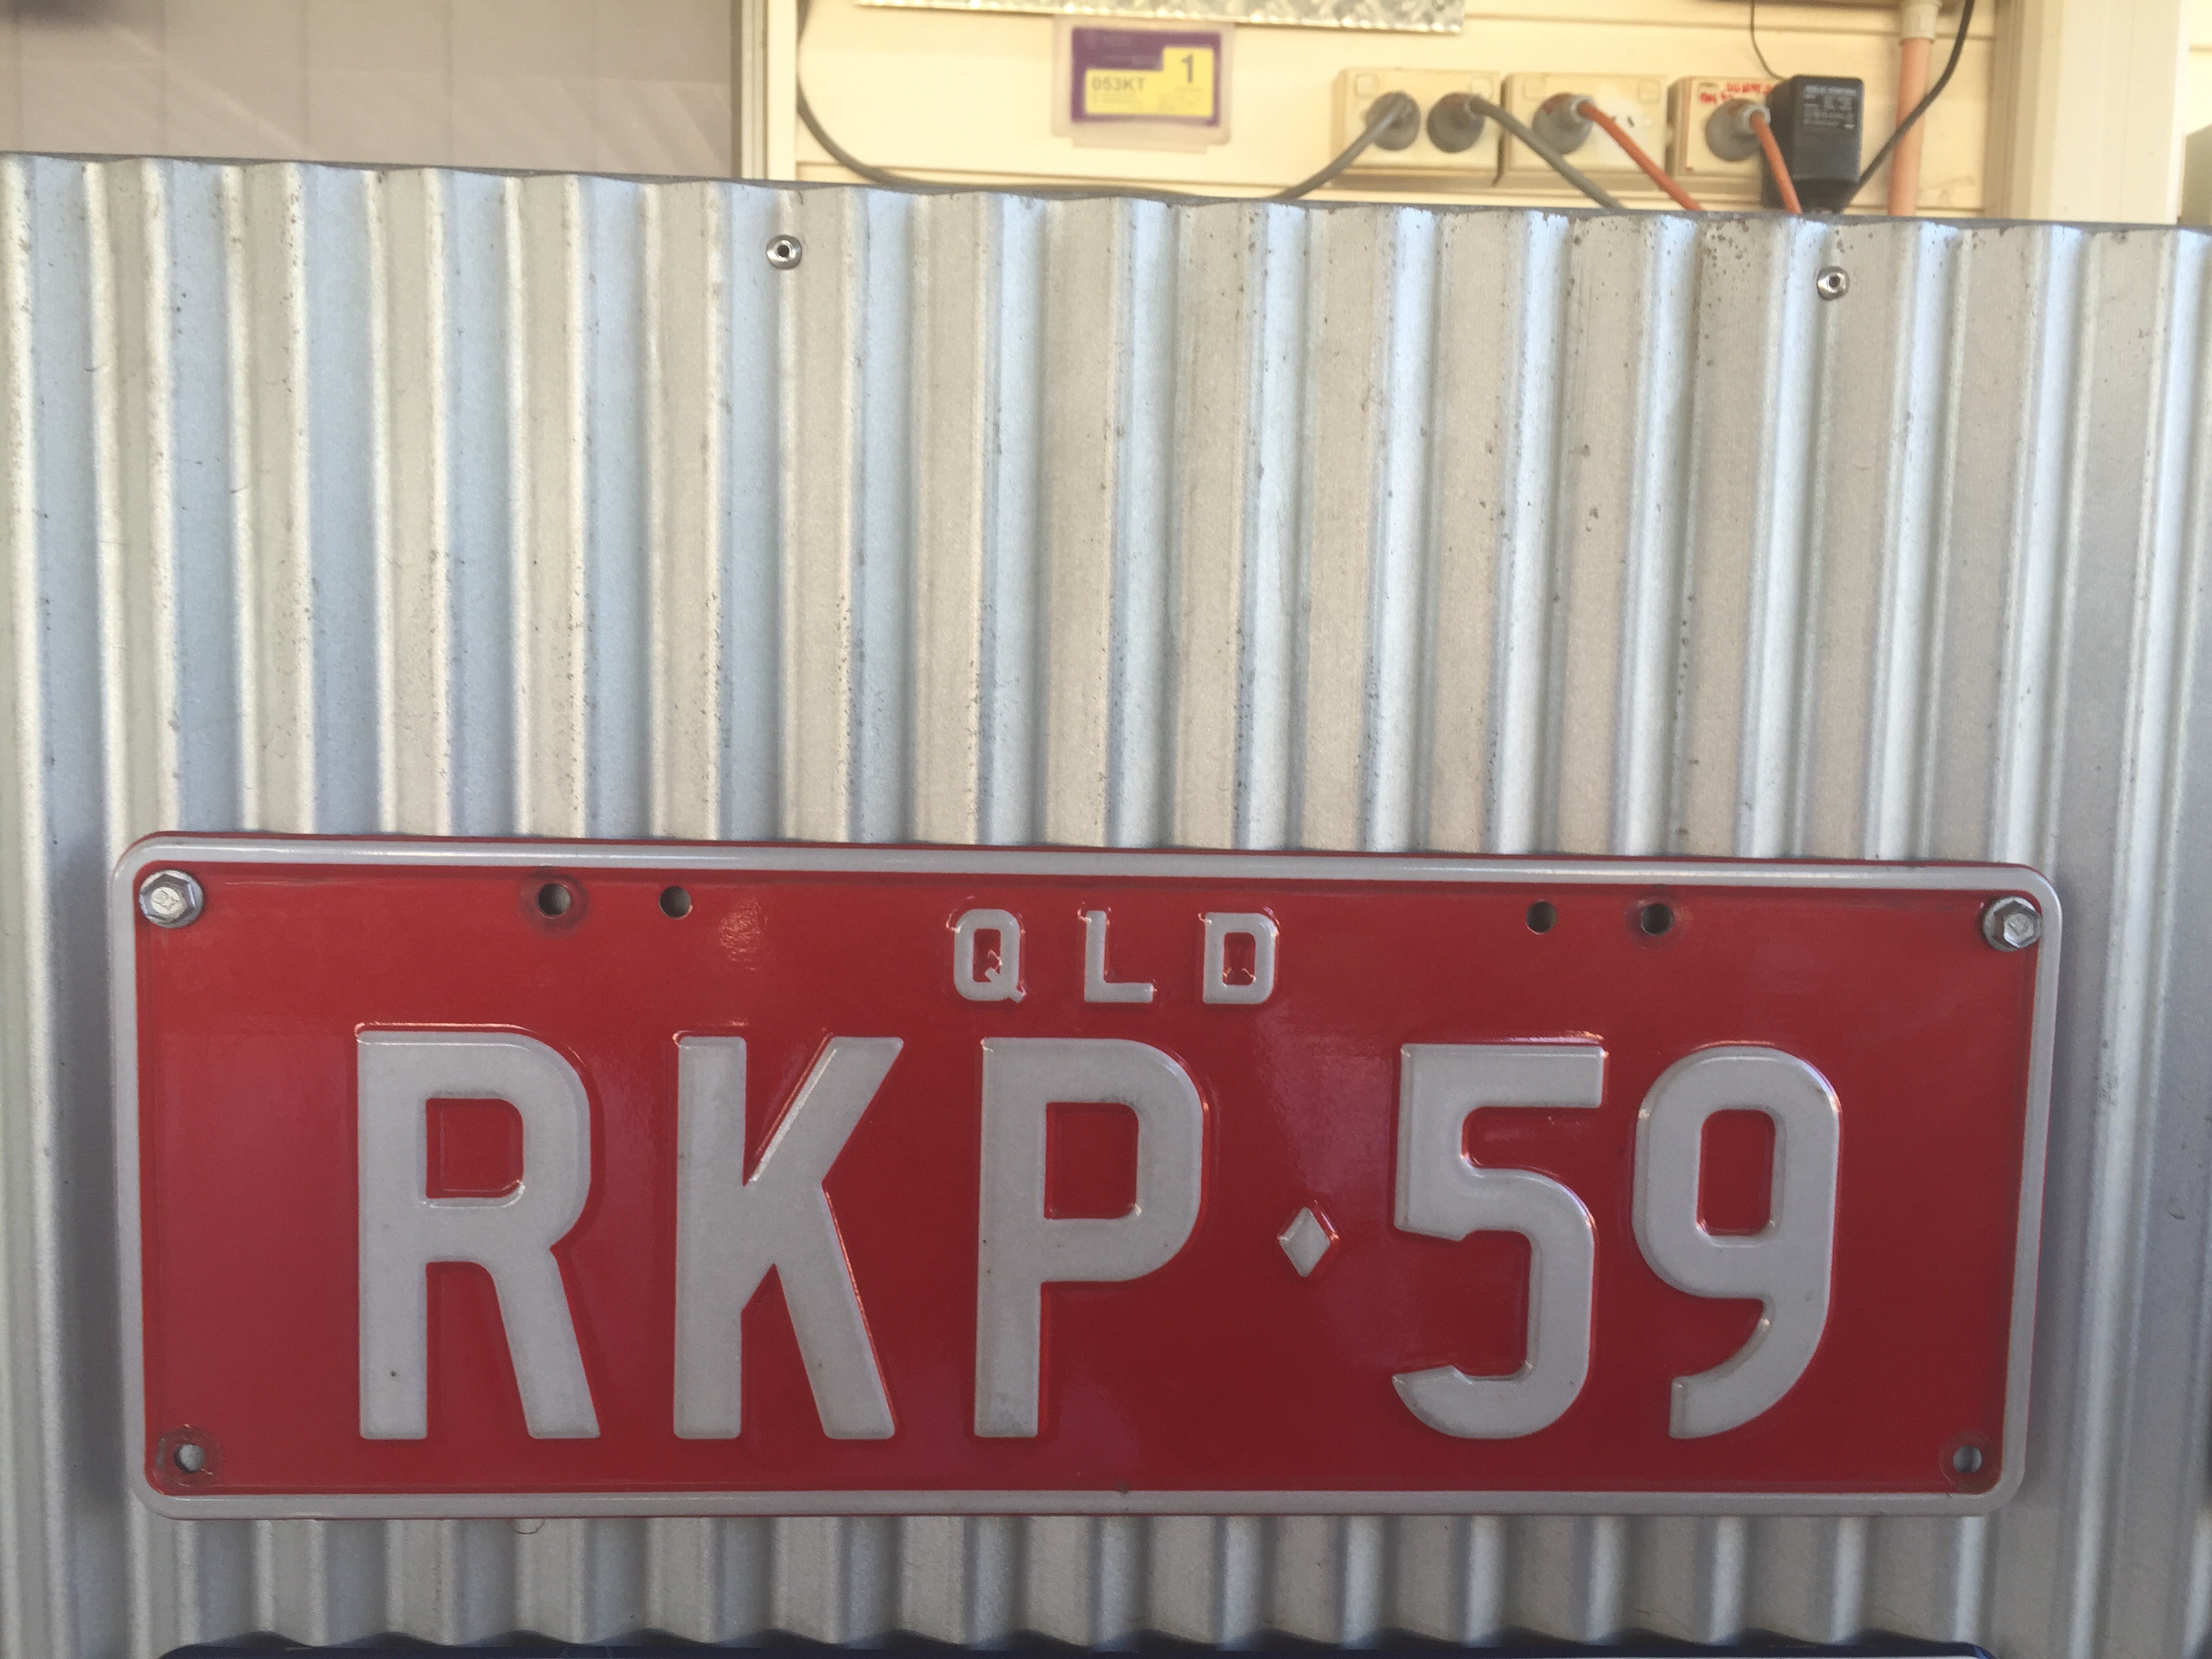 RKP 59